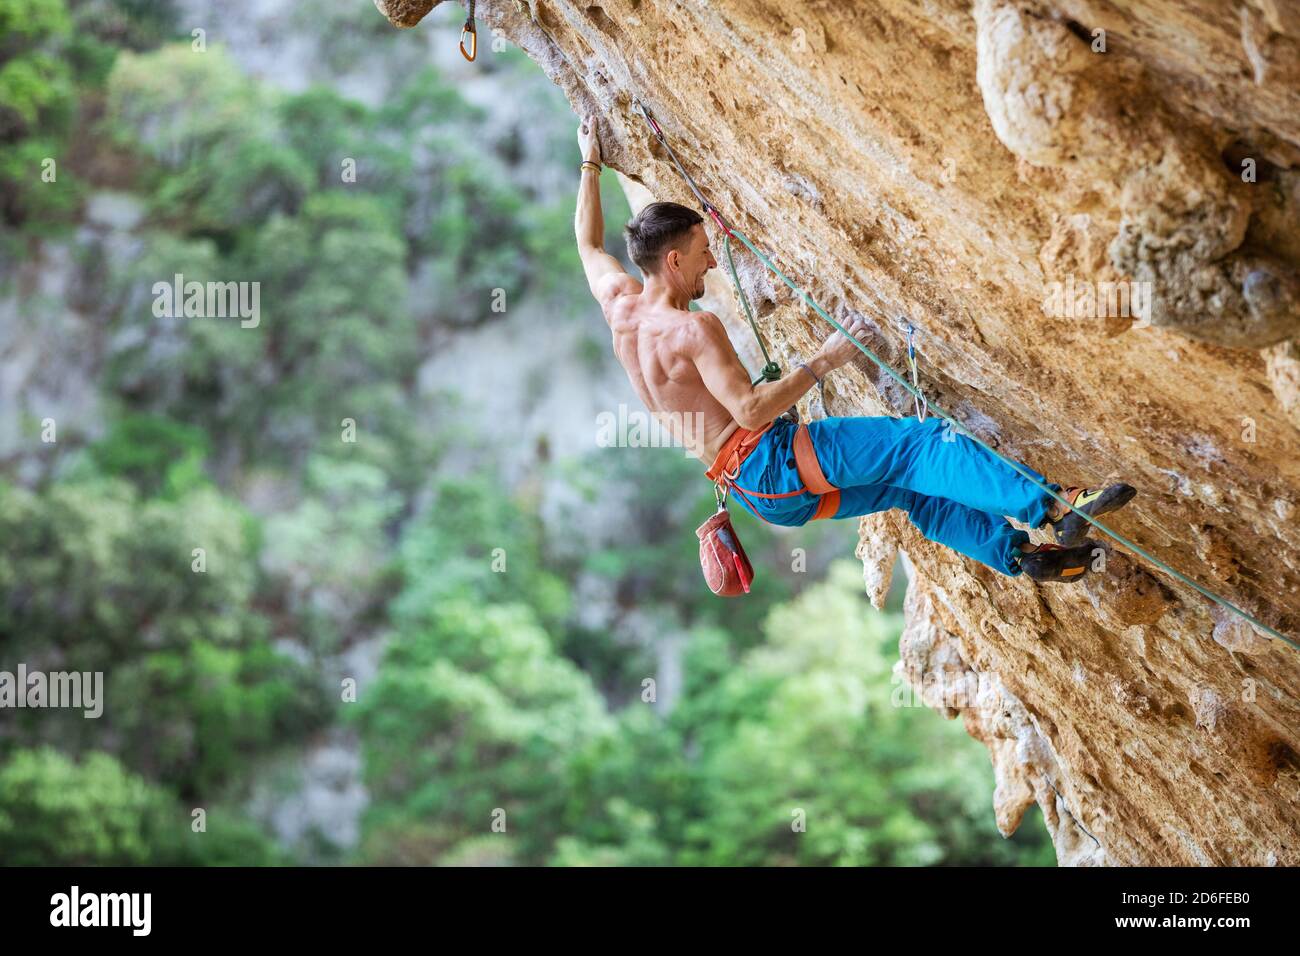 Felskletterer an überhängender Wand. Klettern auf natürlichen Klippen. Starker junger Mann, der sich bemüht, kleine Handgriffe auf anspruchsvoller Strecke zu greifen. Stockfoto